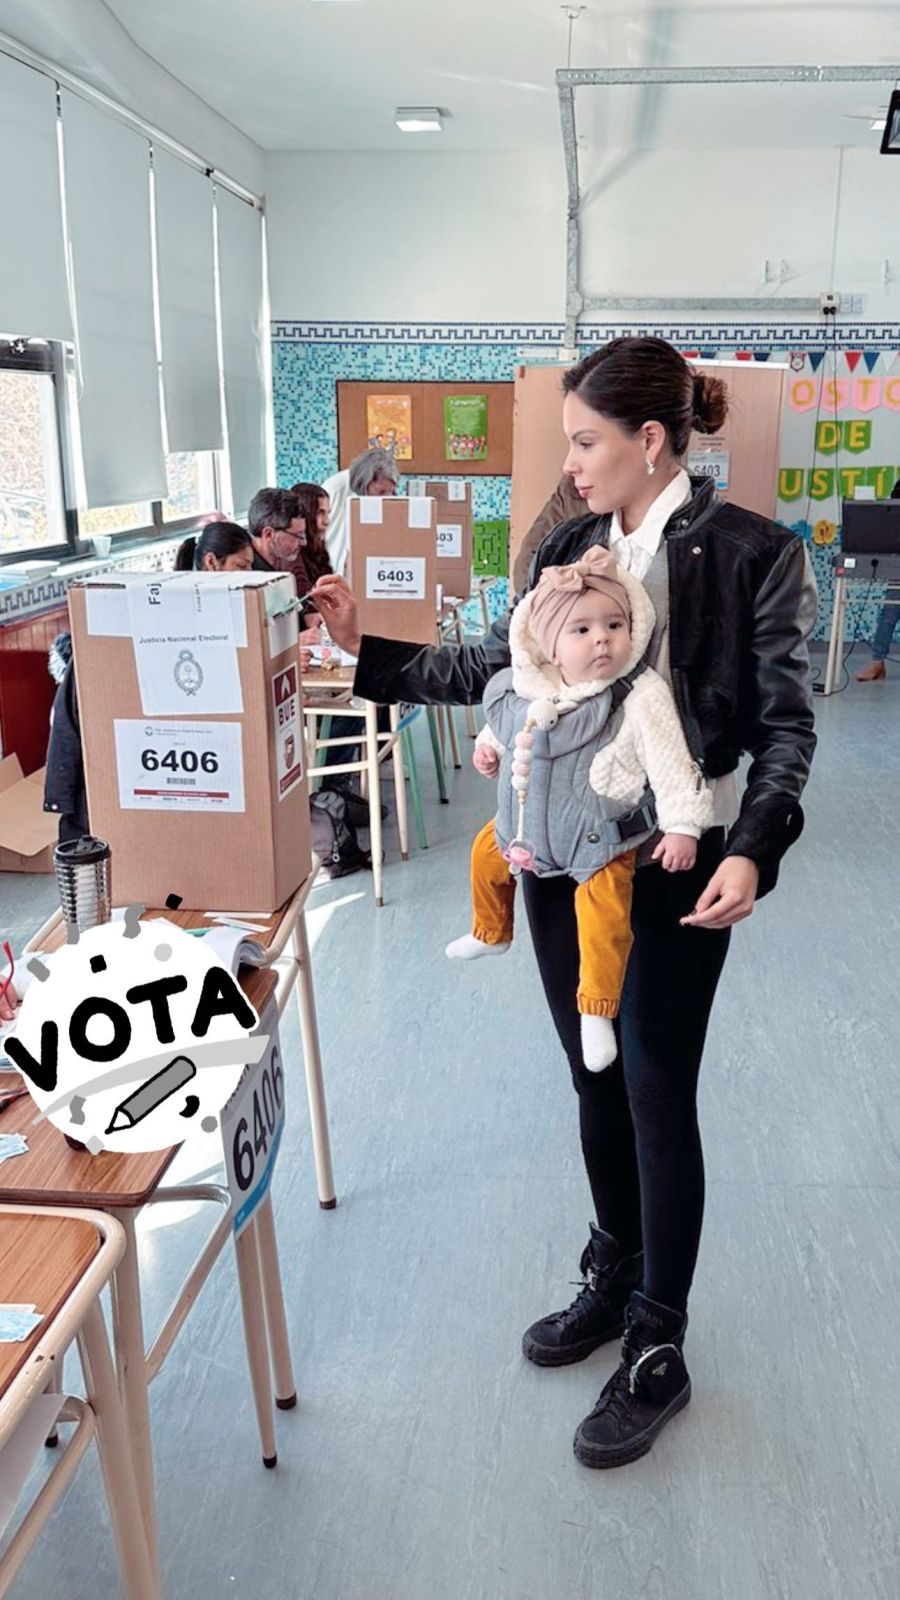 Como Ana García Moritán, Sarah Burlando también fue a votar